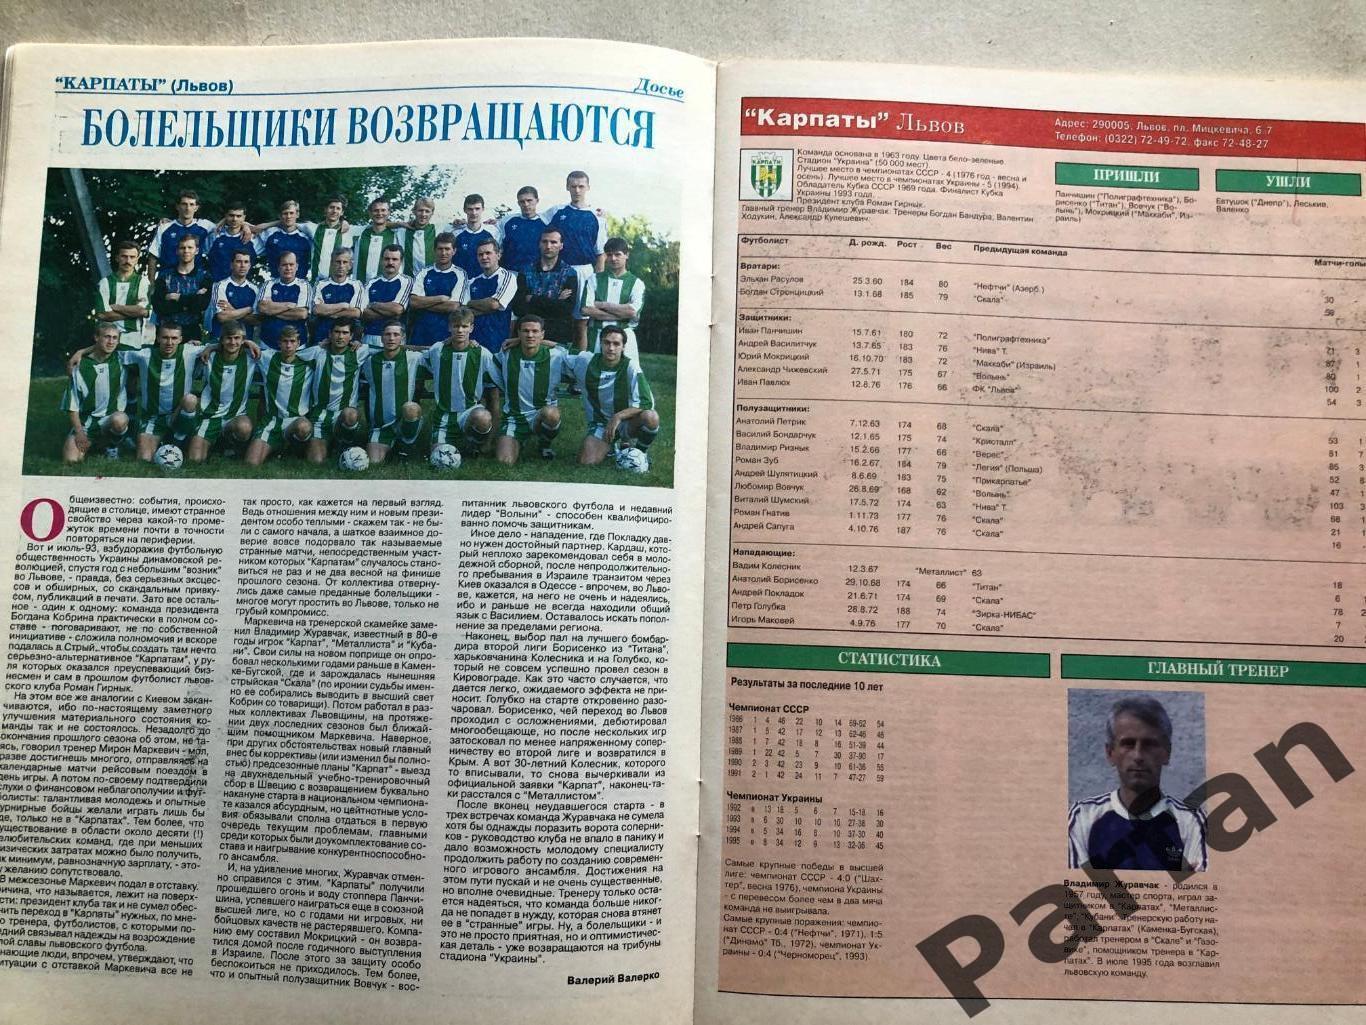 Мир Футбола Україна Вища ліга Чемпіонат 1995/96 Спецвипуск 5